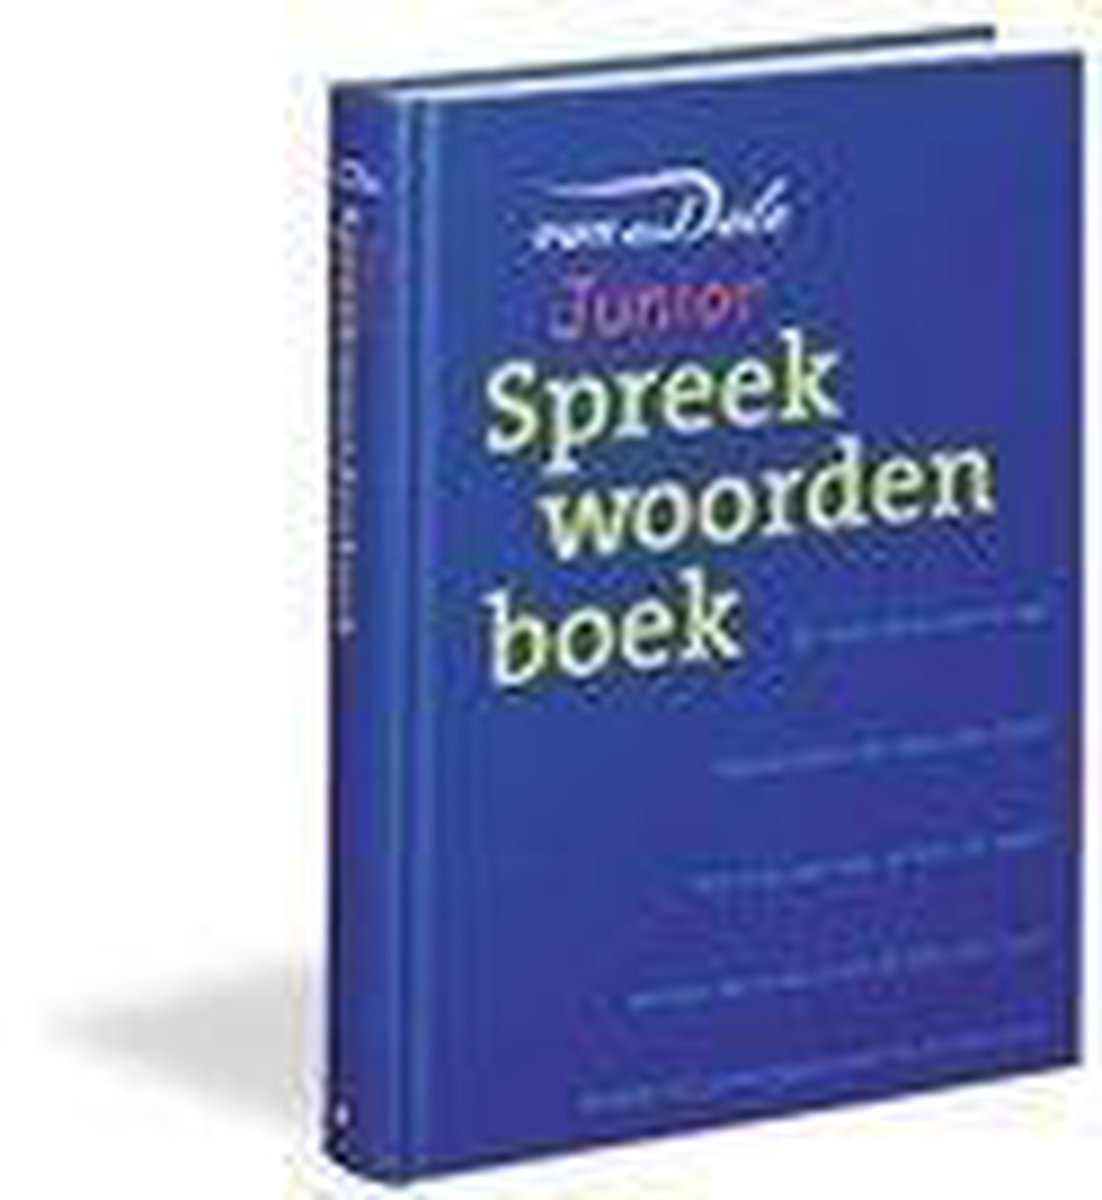 Van Dale Junior Spreekwoordenboek